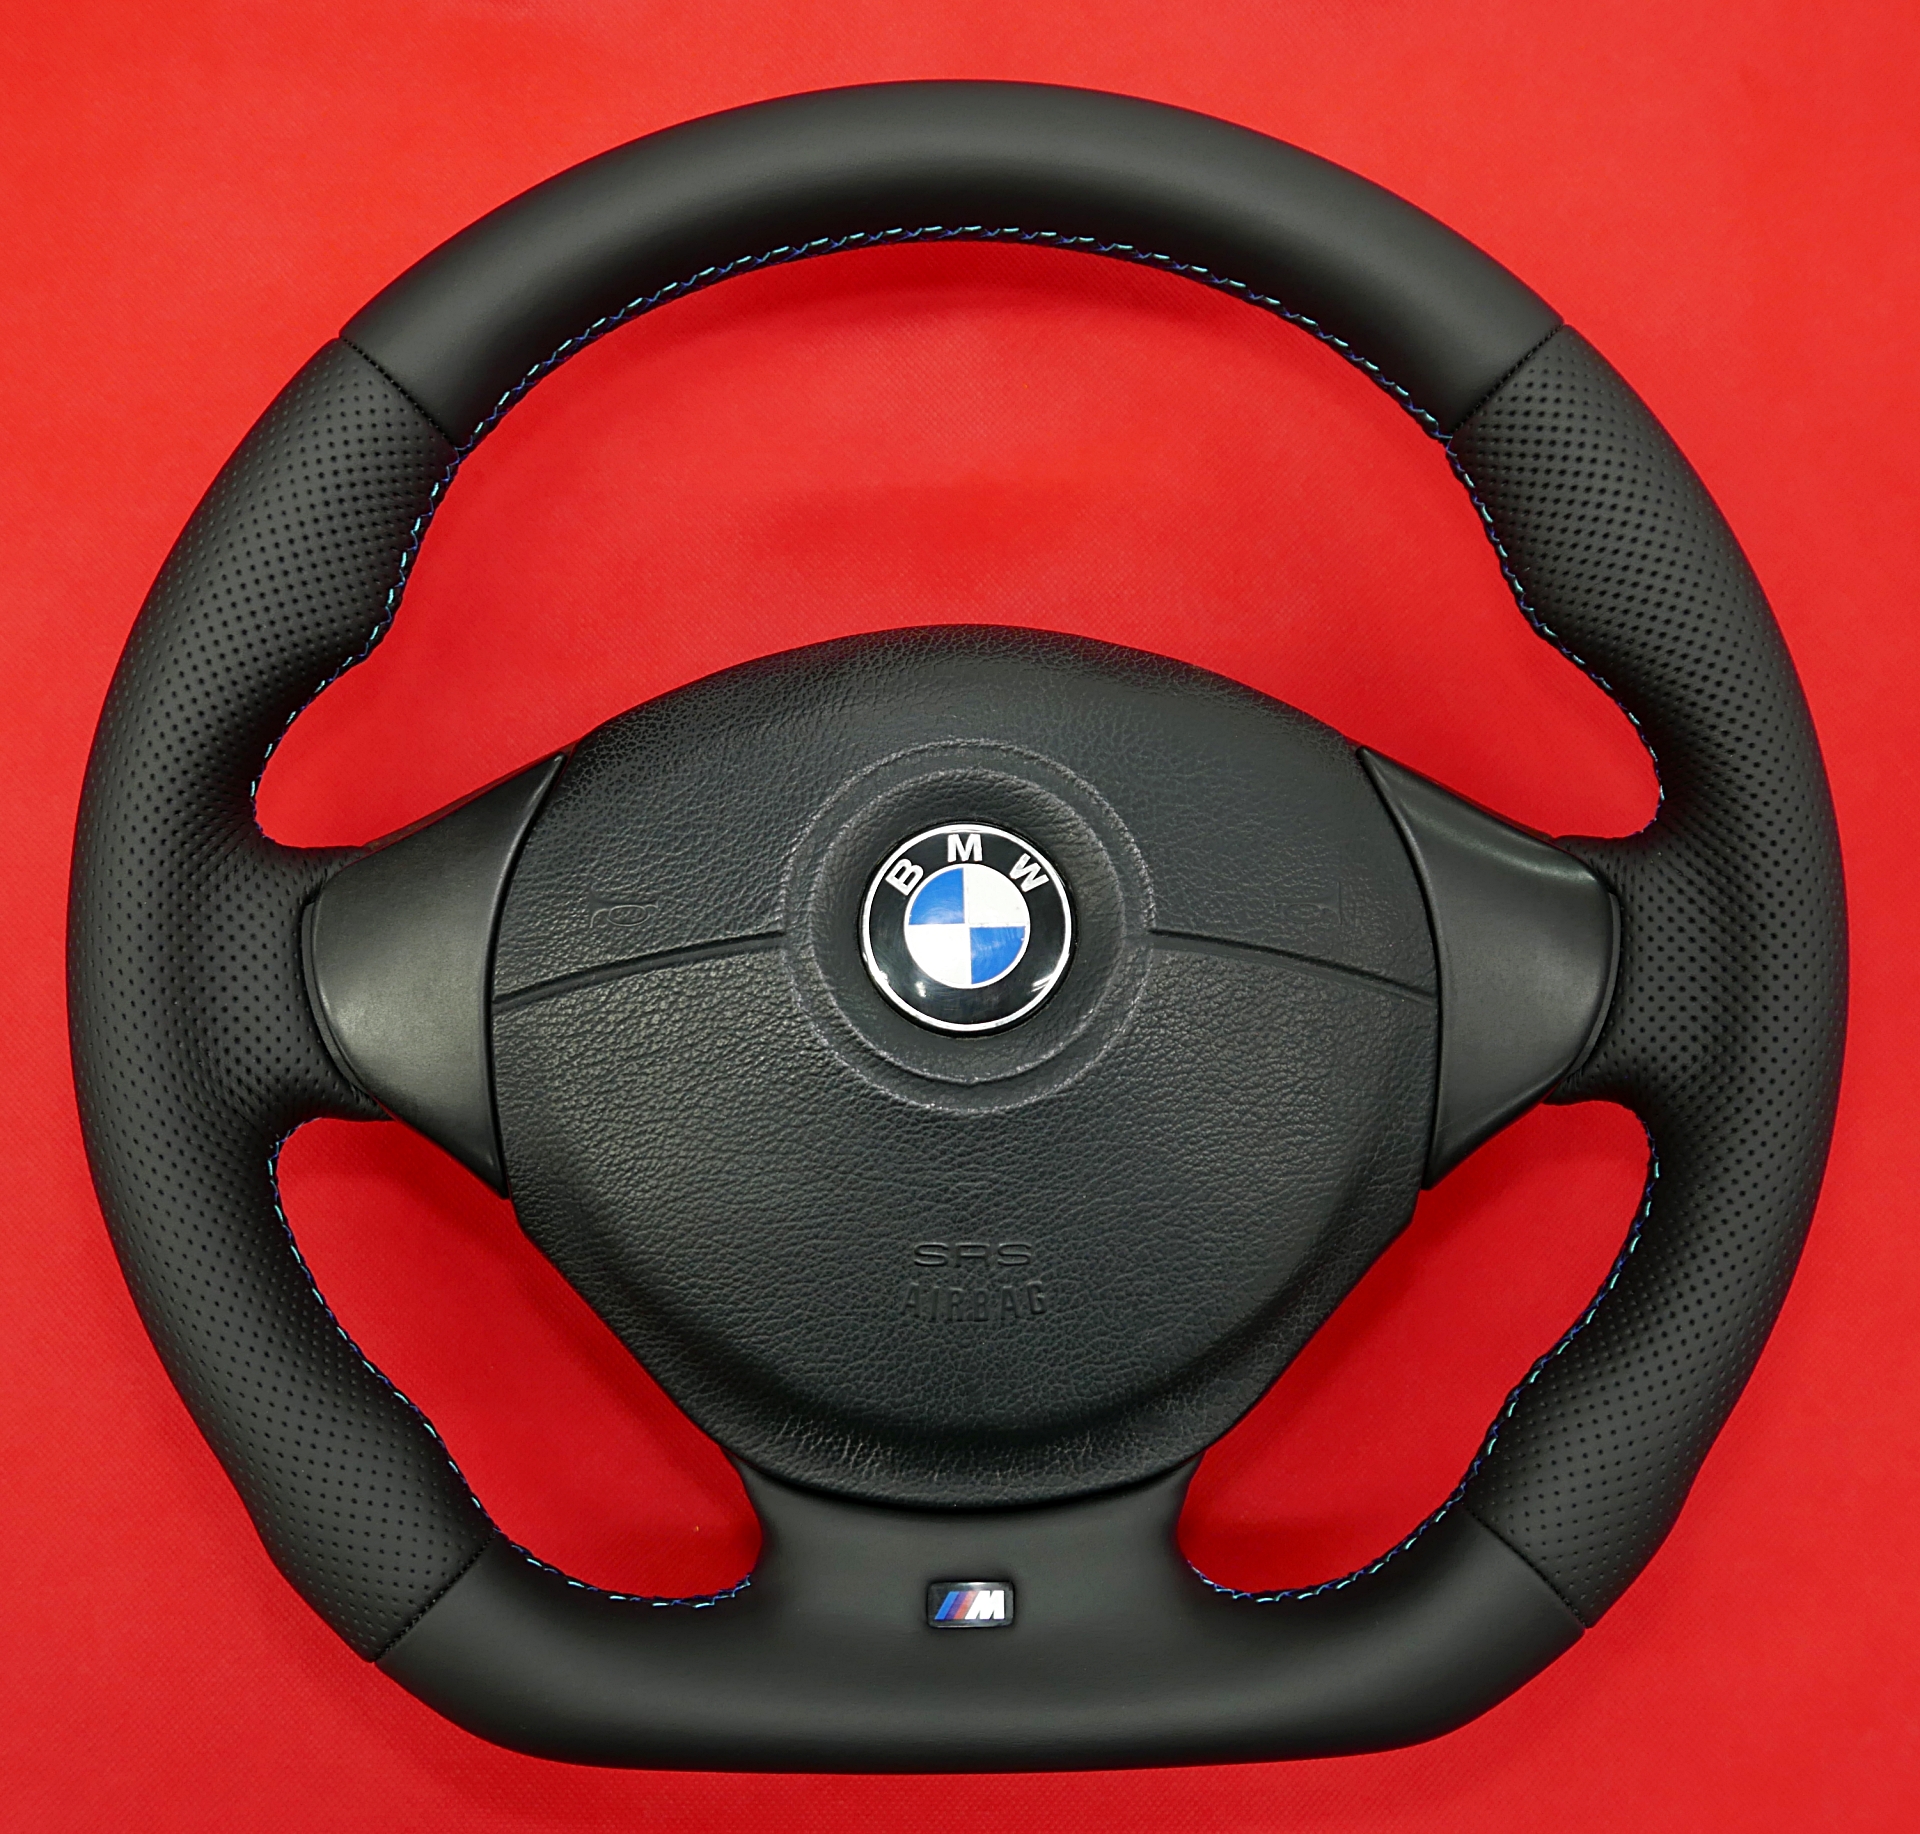 Kierownica BMW E39 zmiana kształtu modyfikacja